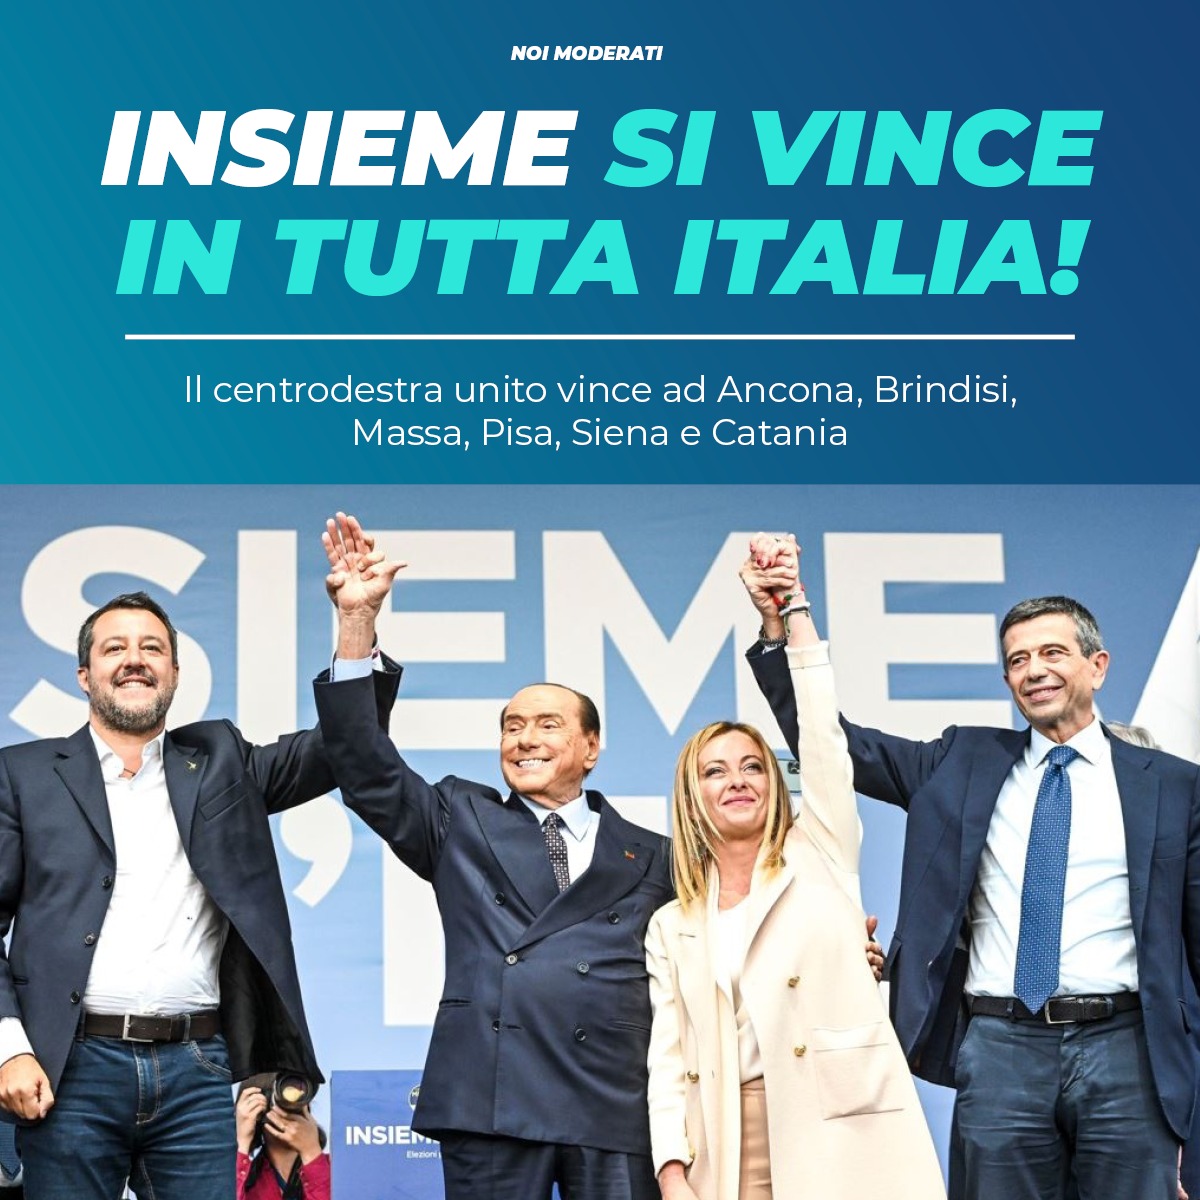  Repubblica.it: Il centrodestra vince perché non è estremista come Schlein. Ora avanti con le riforme